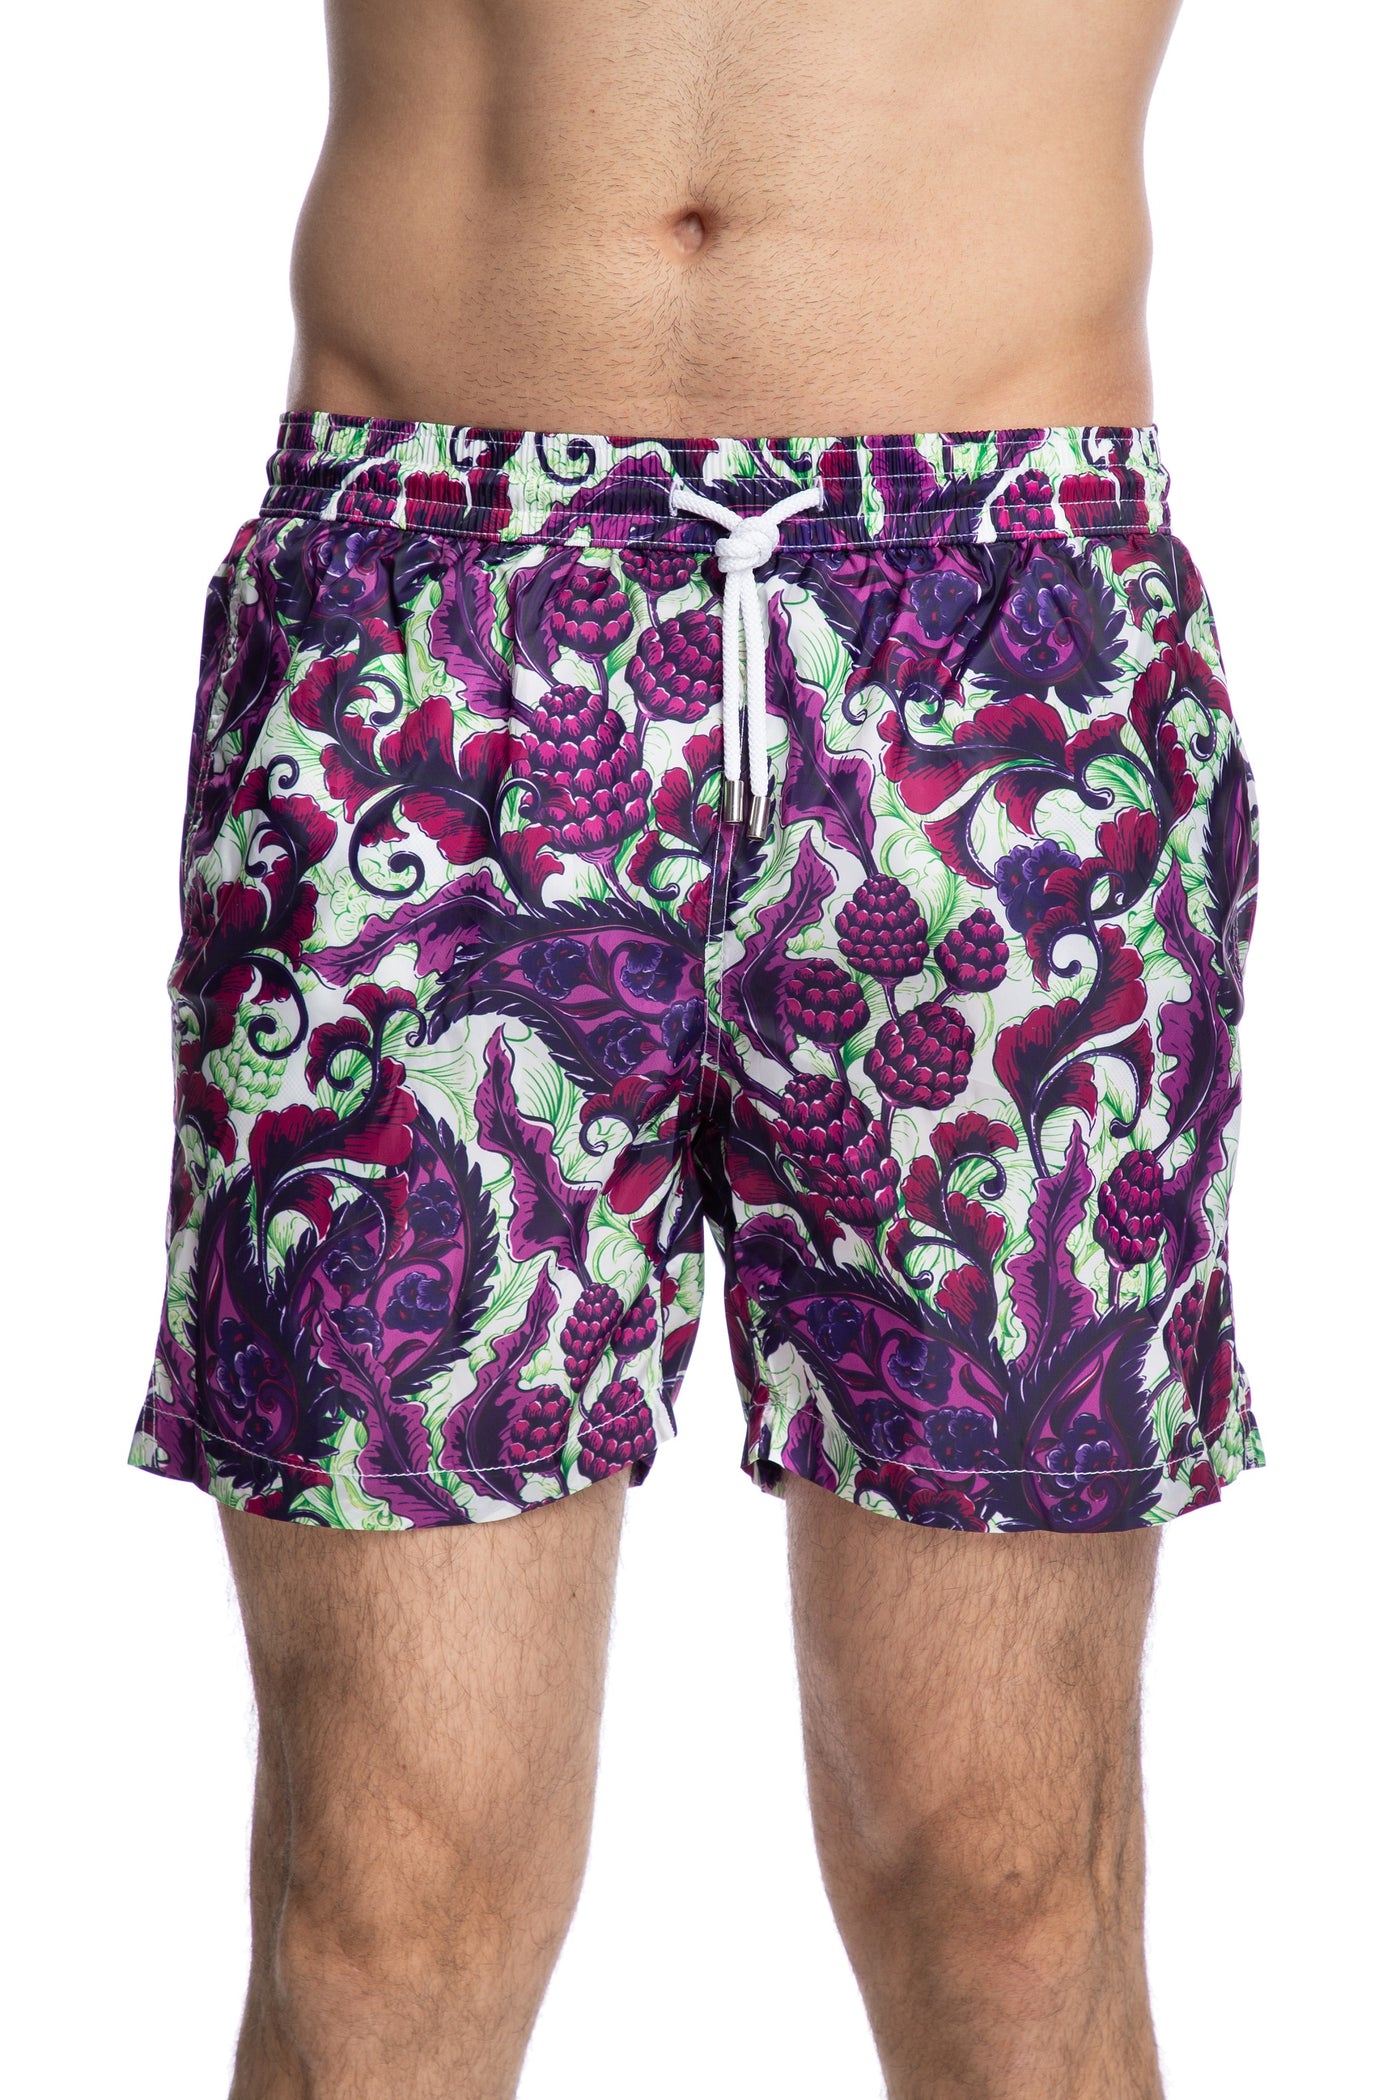 紫と緑のペイズリー柄の水泳パンツ